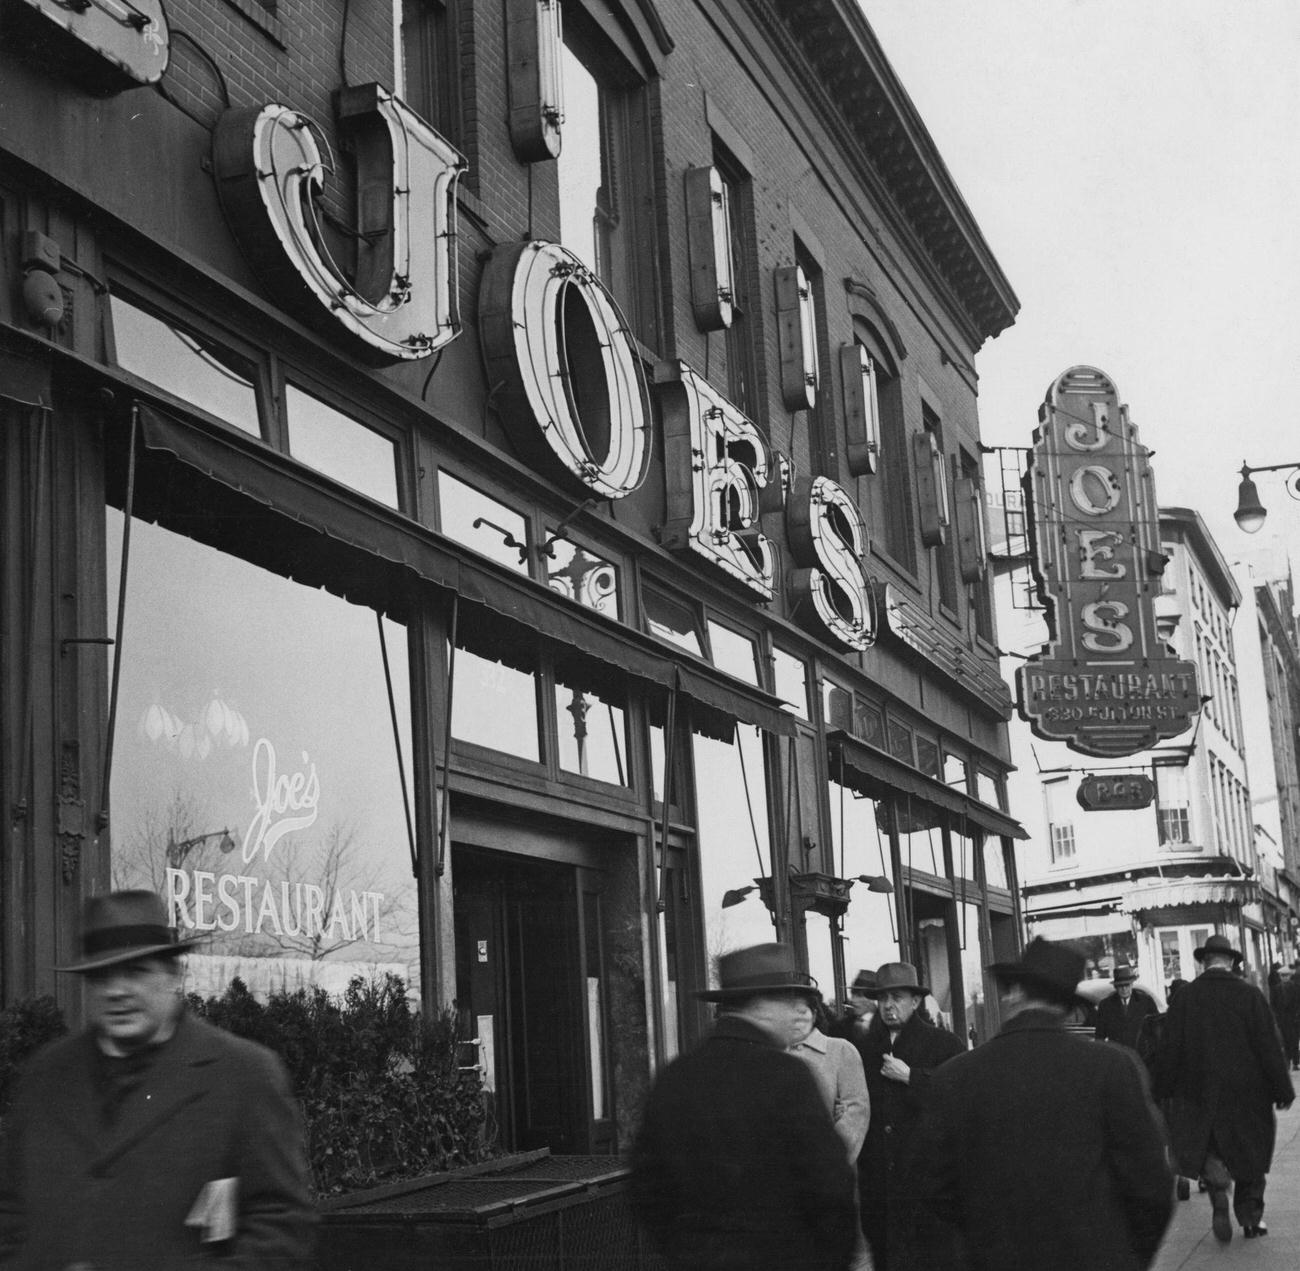 Passersby Outside Joe'S Restaurant On Fulton Street, Brooklyn, 1940